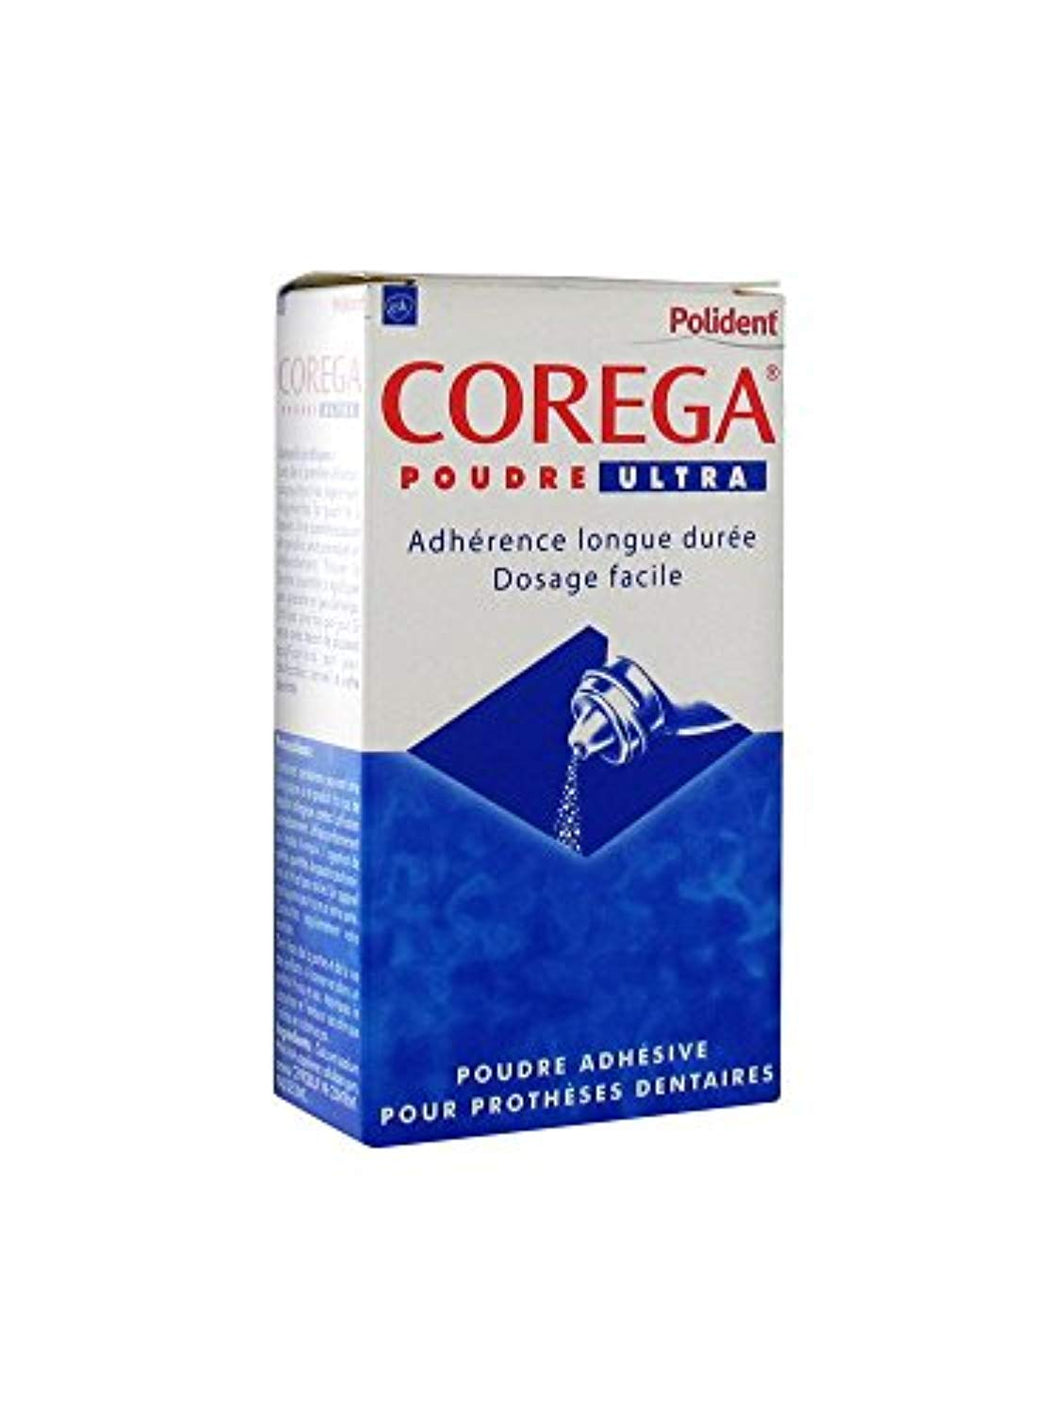 Polident Corega Poudre Ultra Poudre Adhésive Pour Prothèses Dentaires 40 g